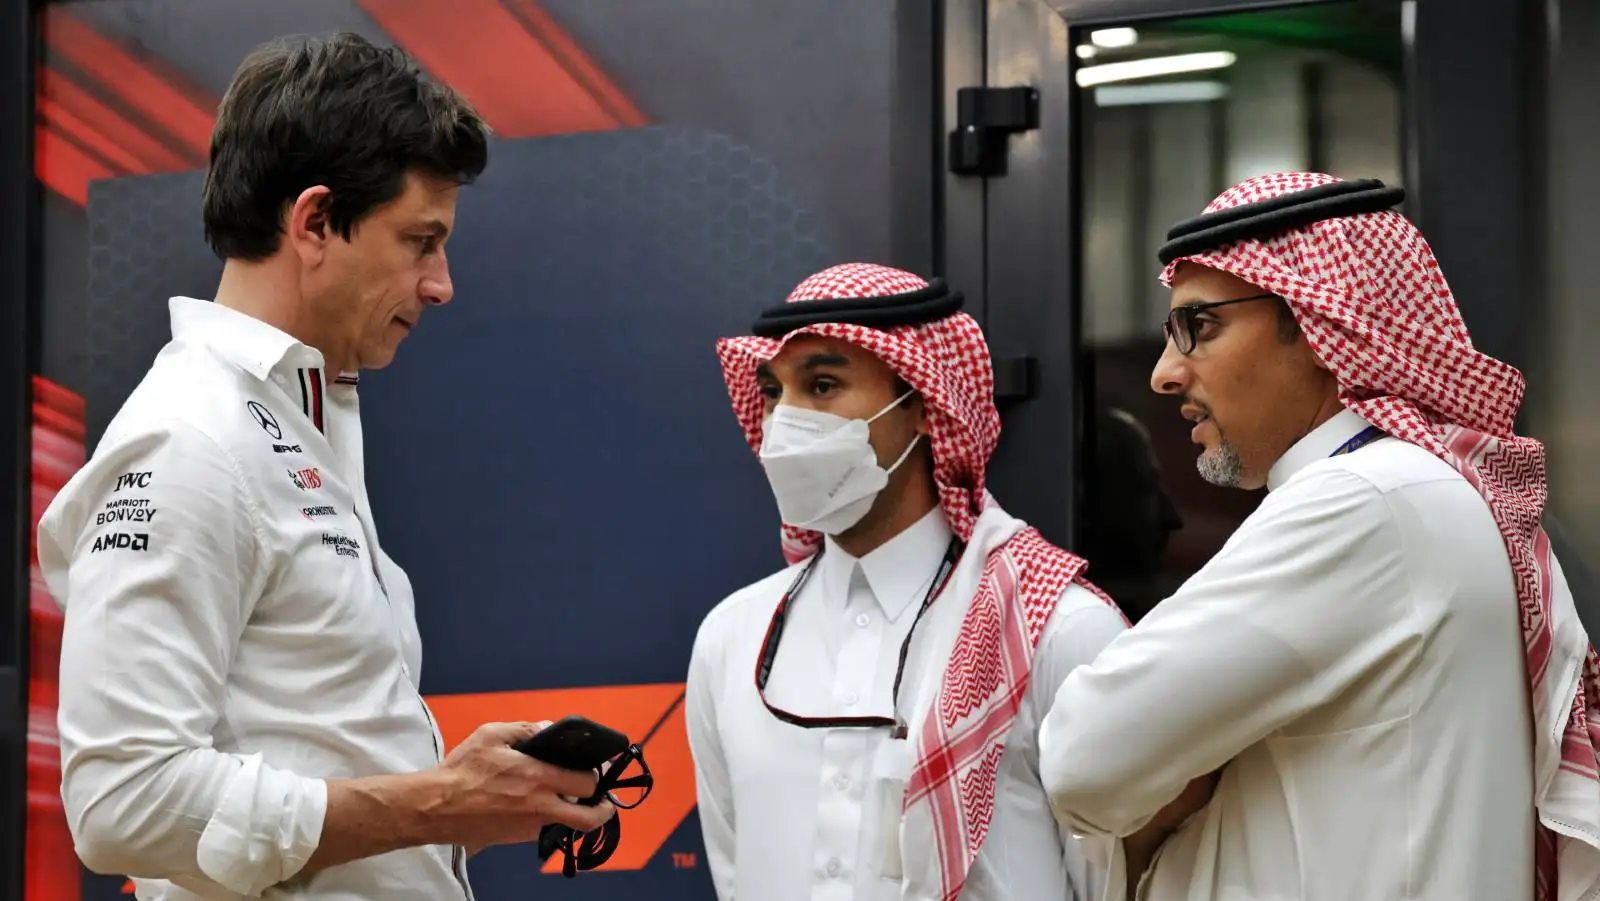 Toto Wolff talks to Saudi Arabian GP officials. Jeddah March 2022.